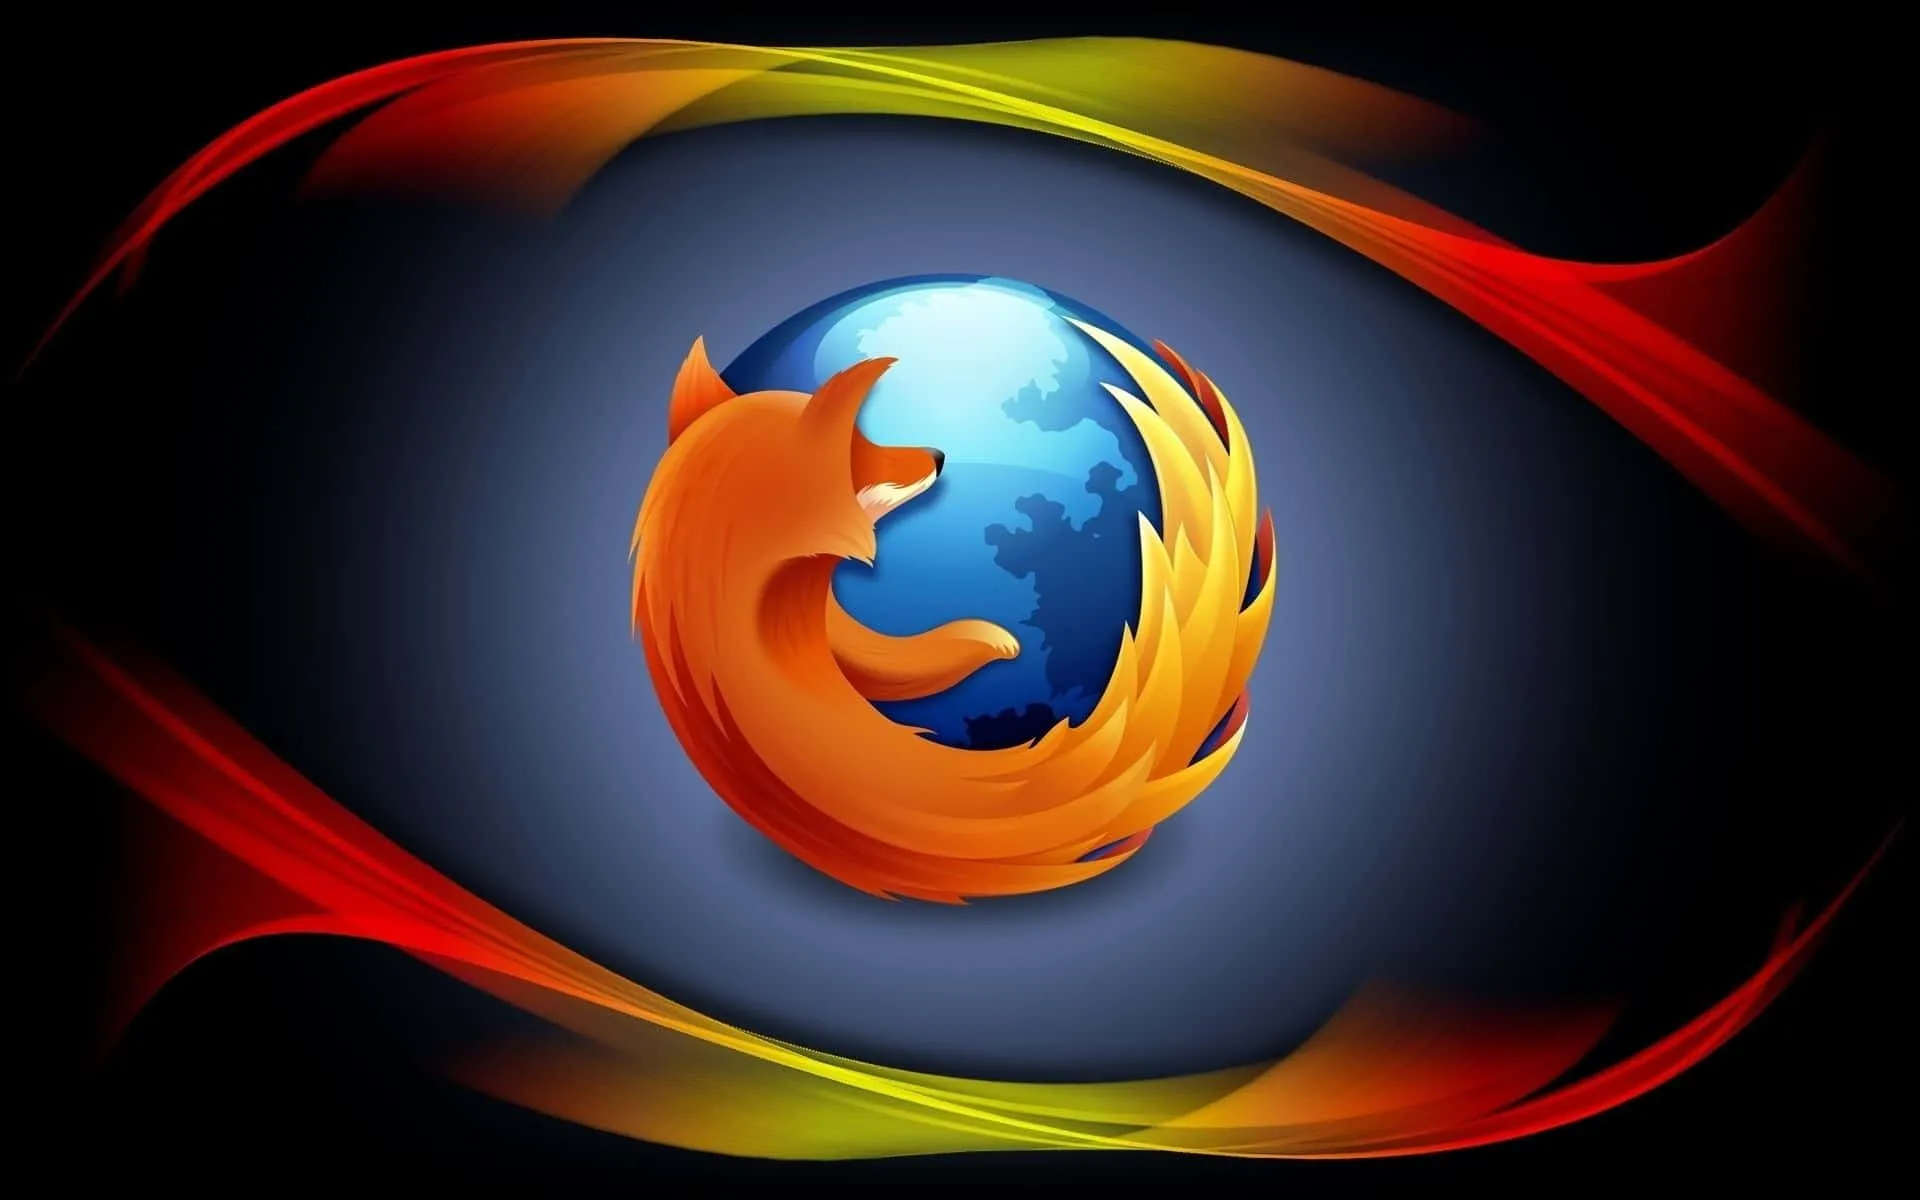 Firefox Hello, nuova chat veloce, sicura e divertente